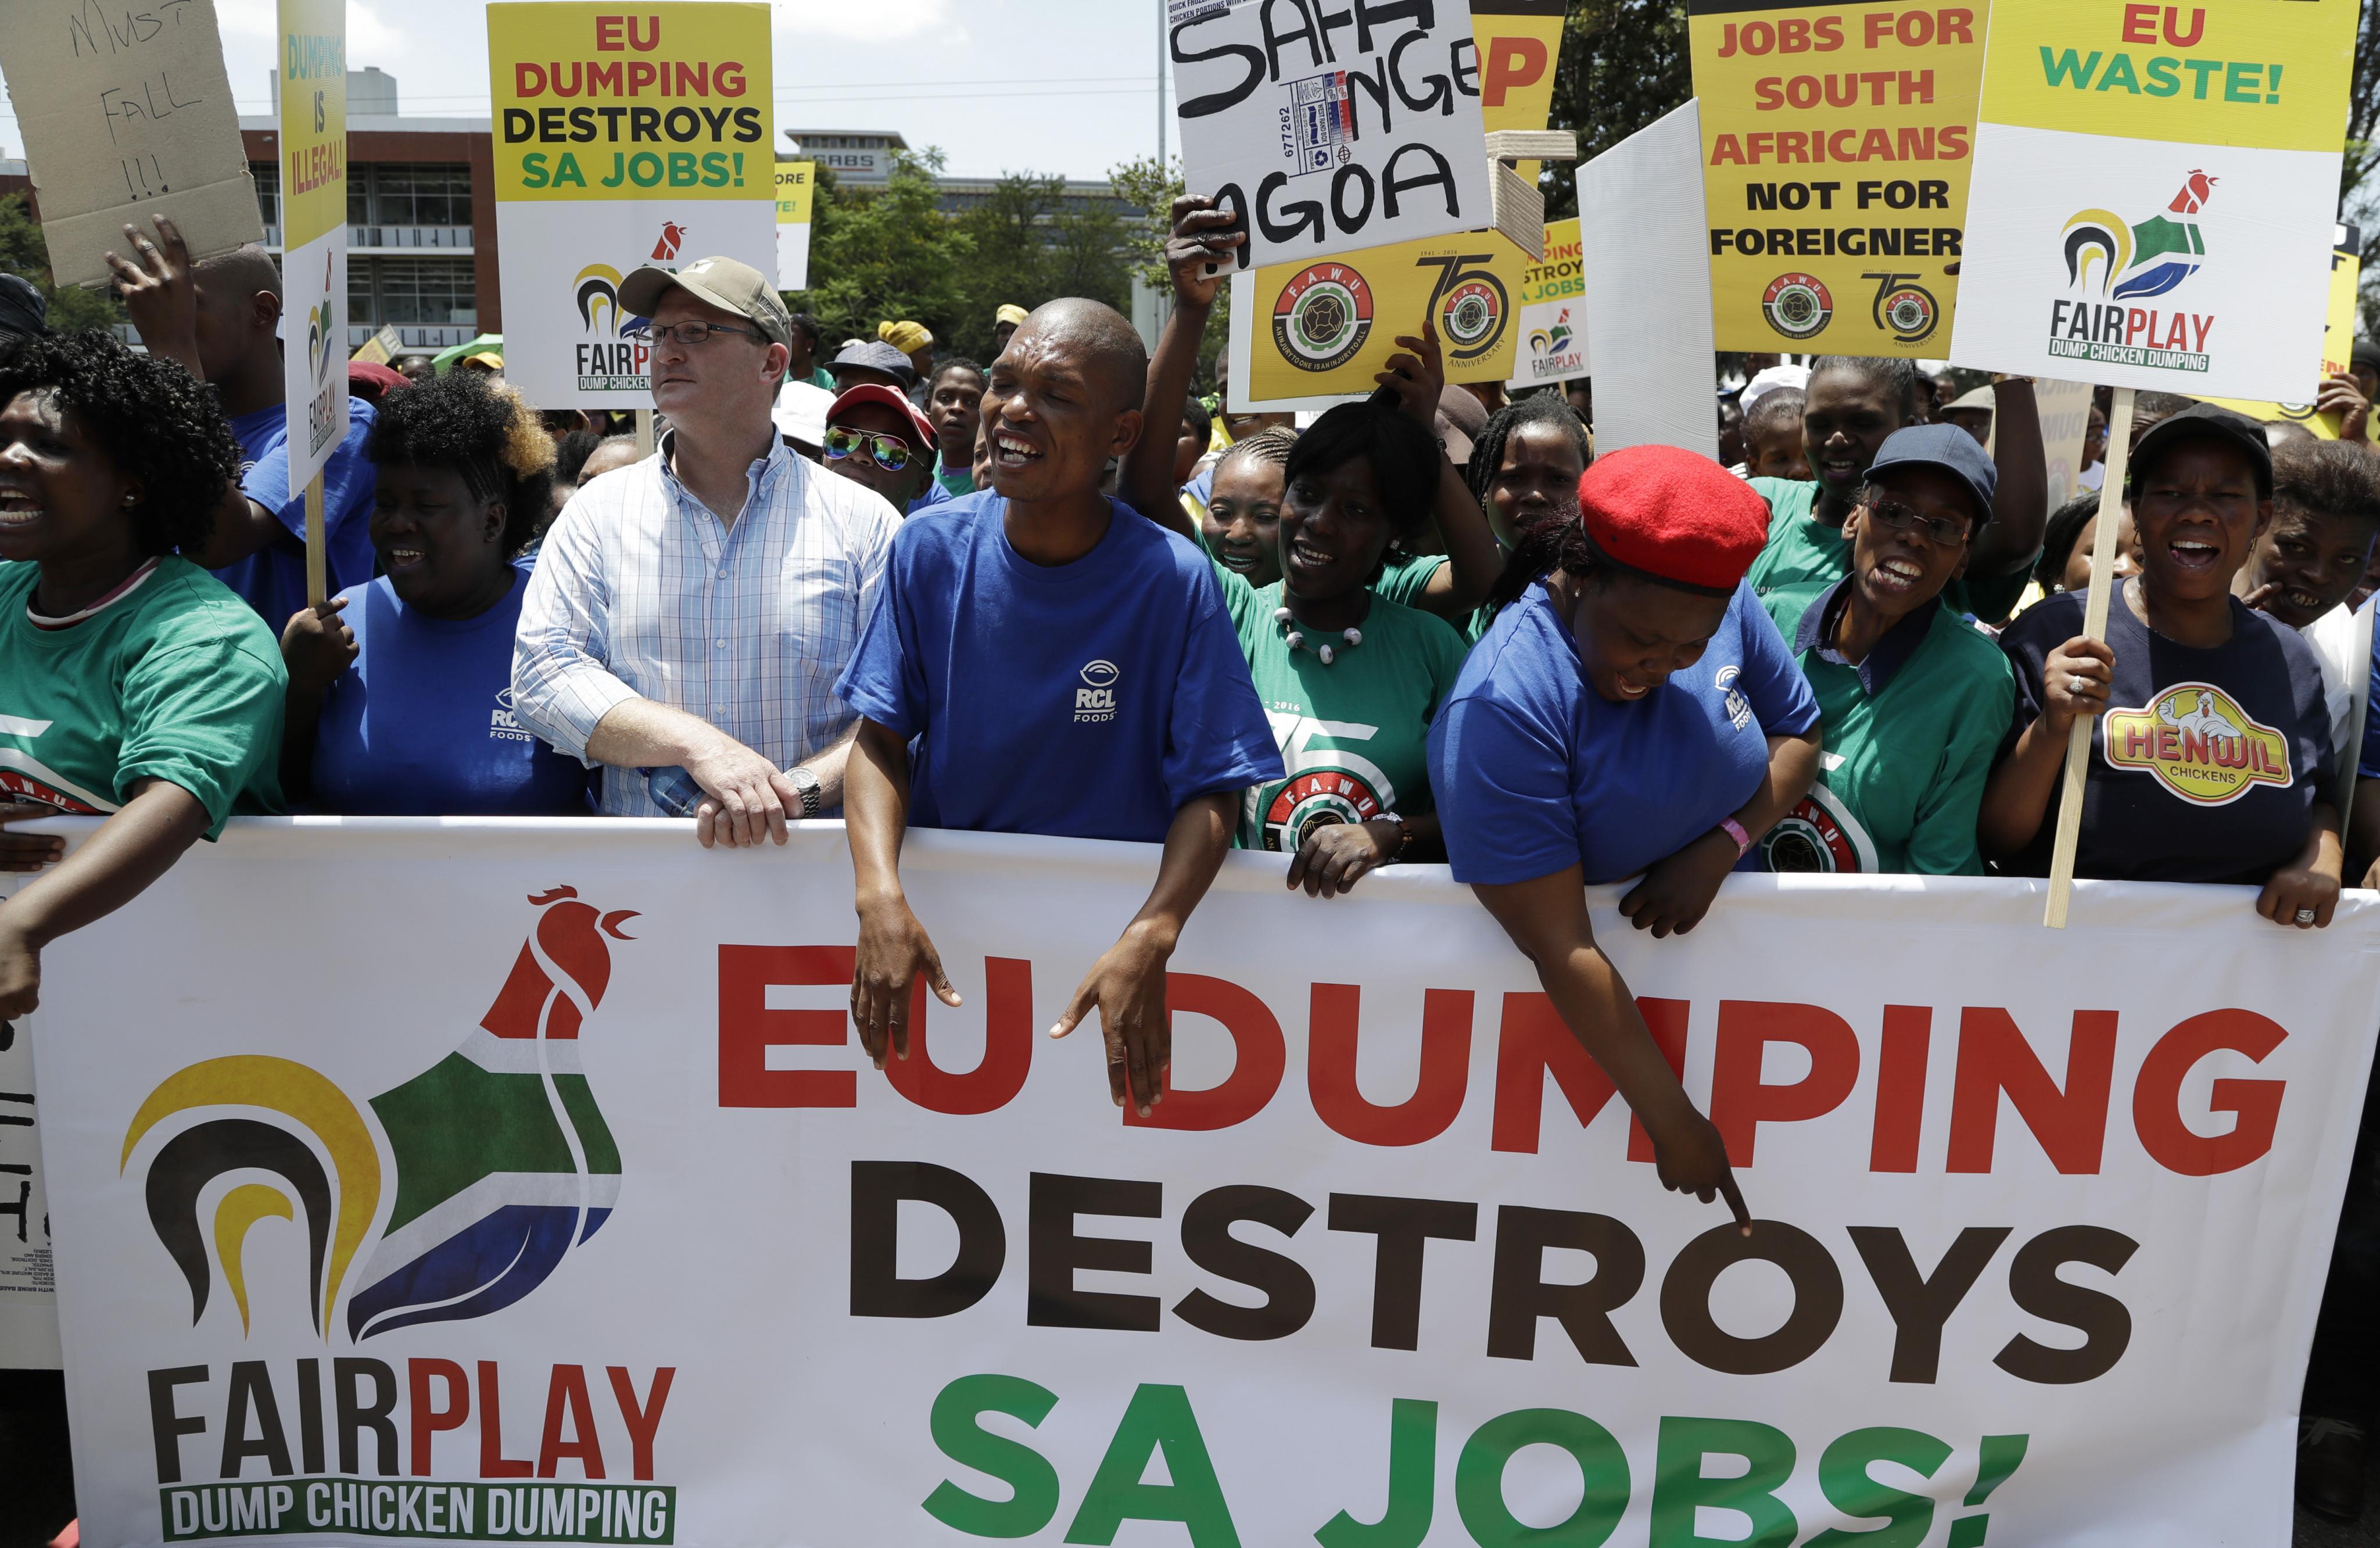 Arbeiter aus dem südafrikanischen Geflügelsektor protestierten 2017 vor dem EU-Sitz in Pretoria. Grund war der geplante Abbau von Arbeitsplätzen, der mit mangelnder Wettbewerbsfähigkeit wegen aus Europa importierten günstigen Huhns begründetet wurde.